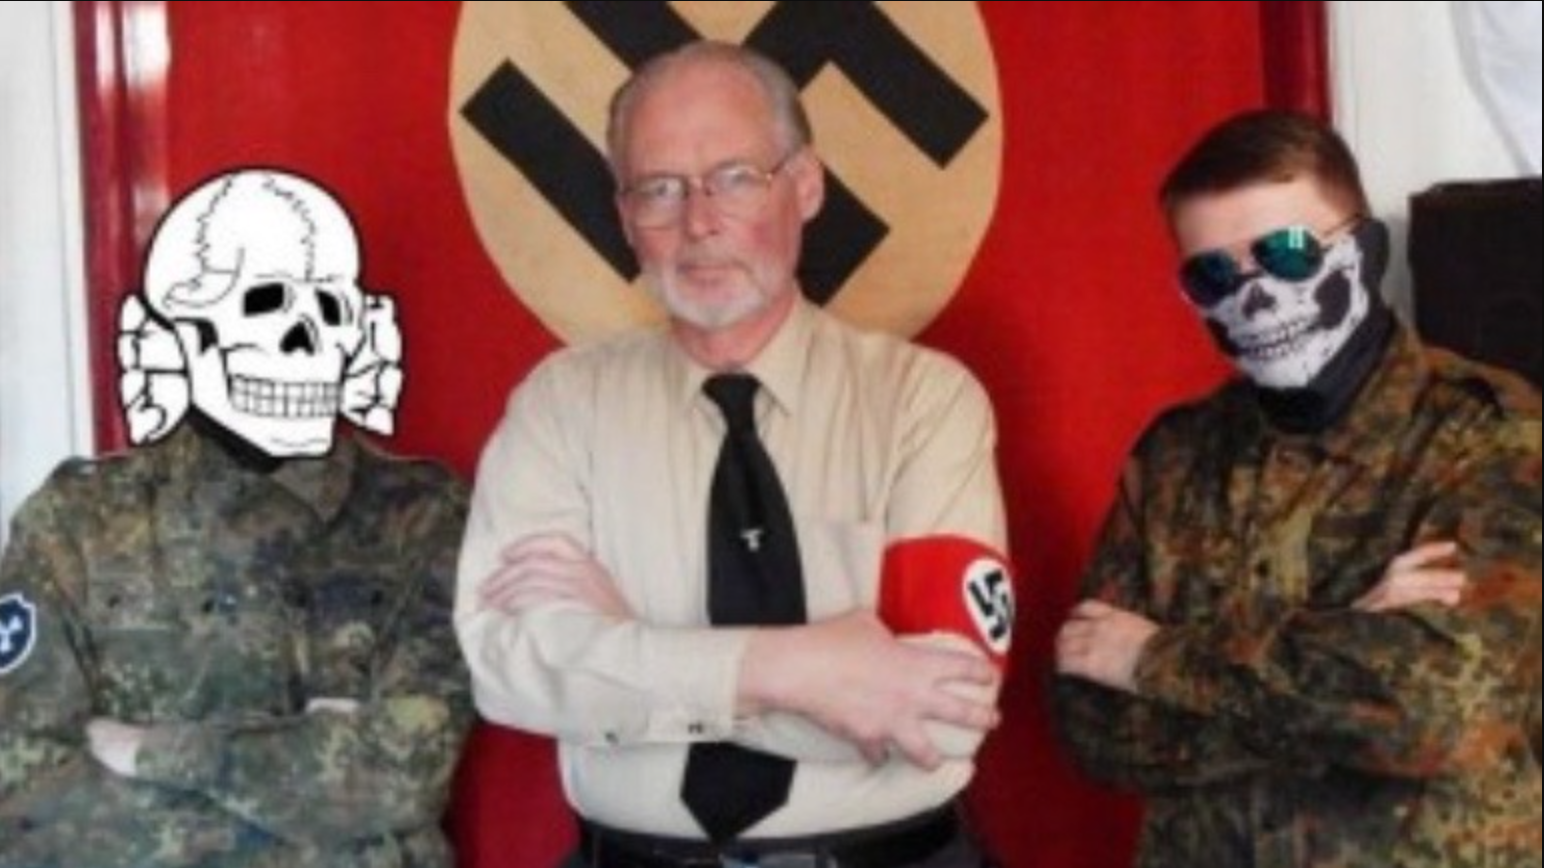 Ein älterer Mann in Nazi-Uniform posiert vor einer Hakenkreuzflagge neben zwei jungen Männern in Tarnkleidung und verdeckten Gesichtern